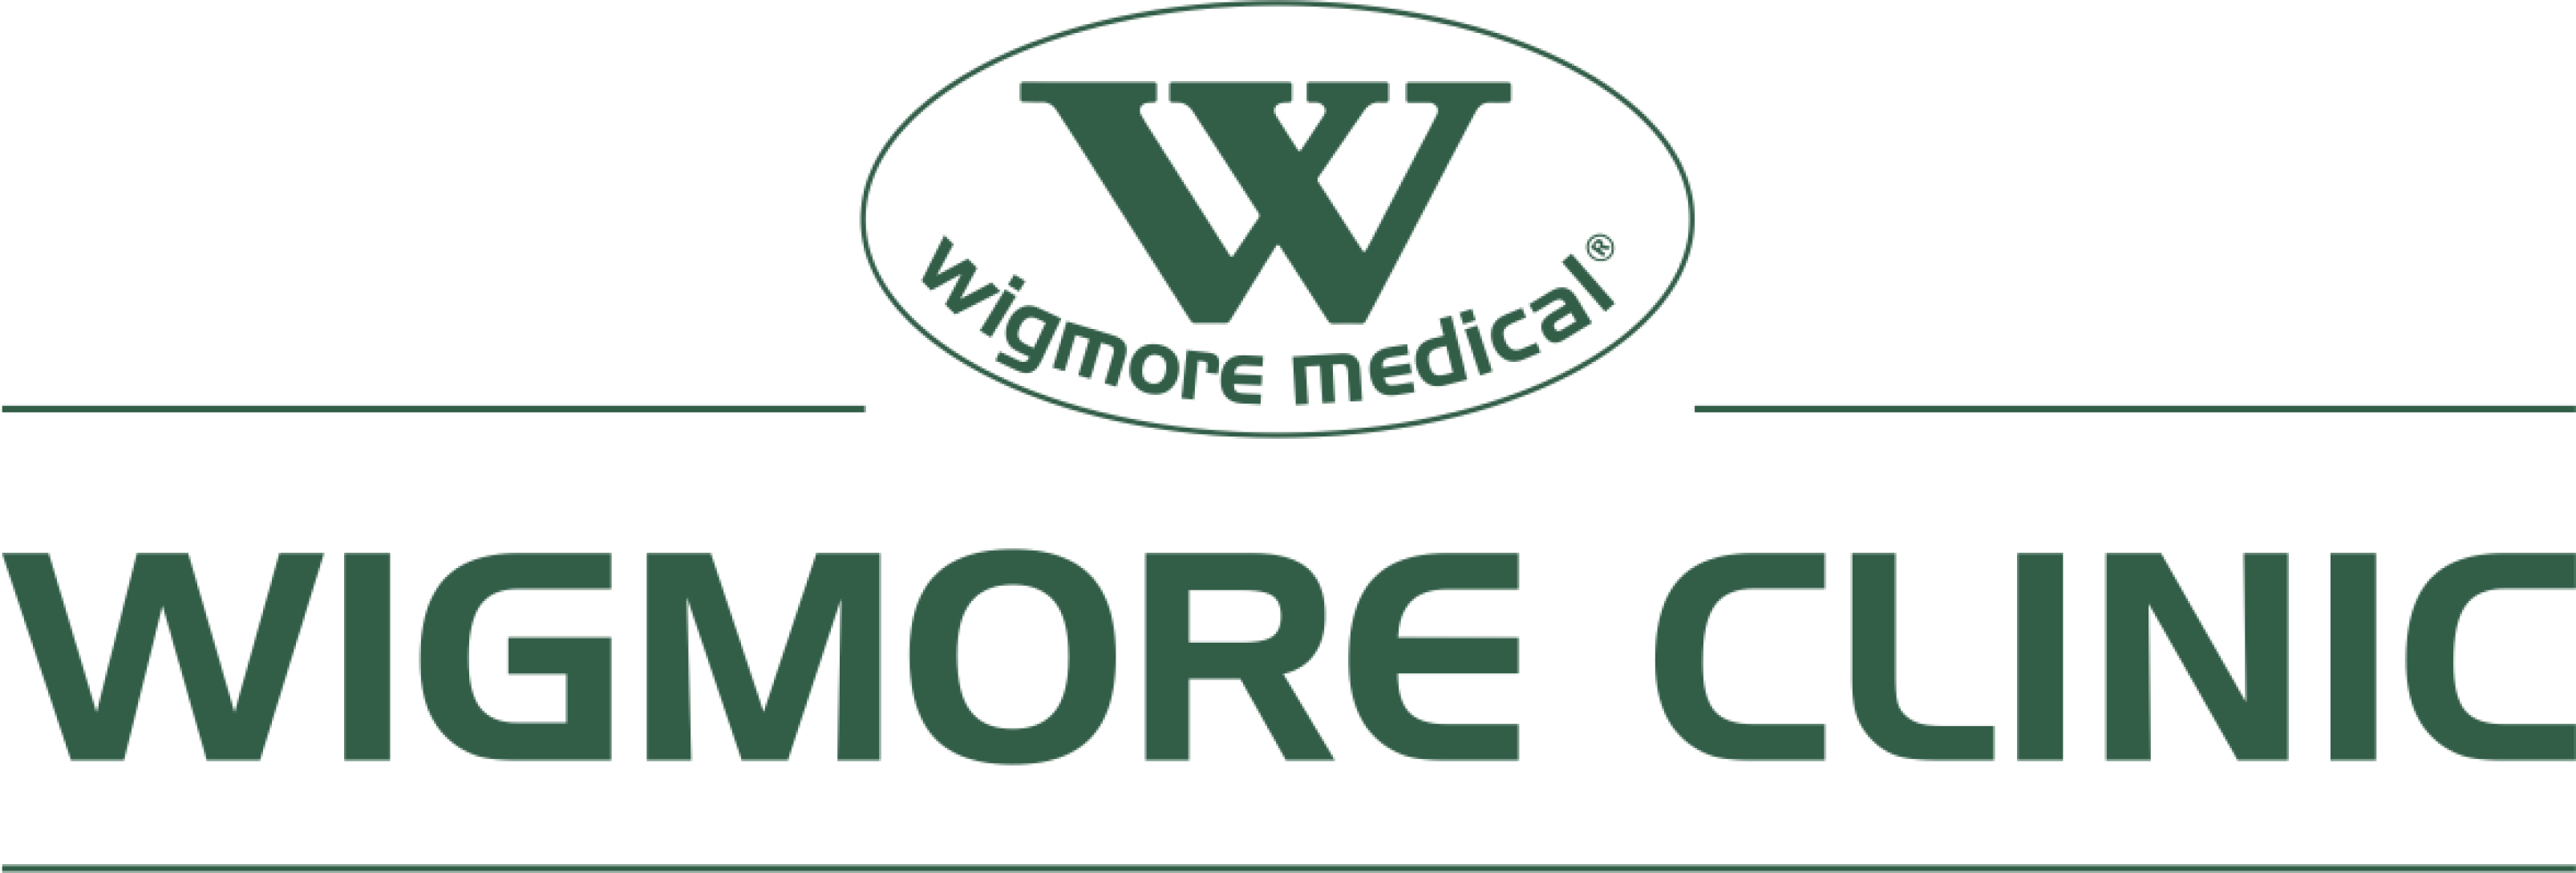 Wigmore clinic